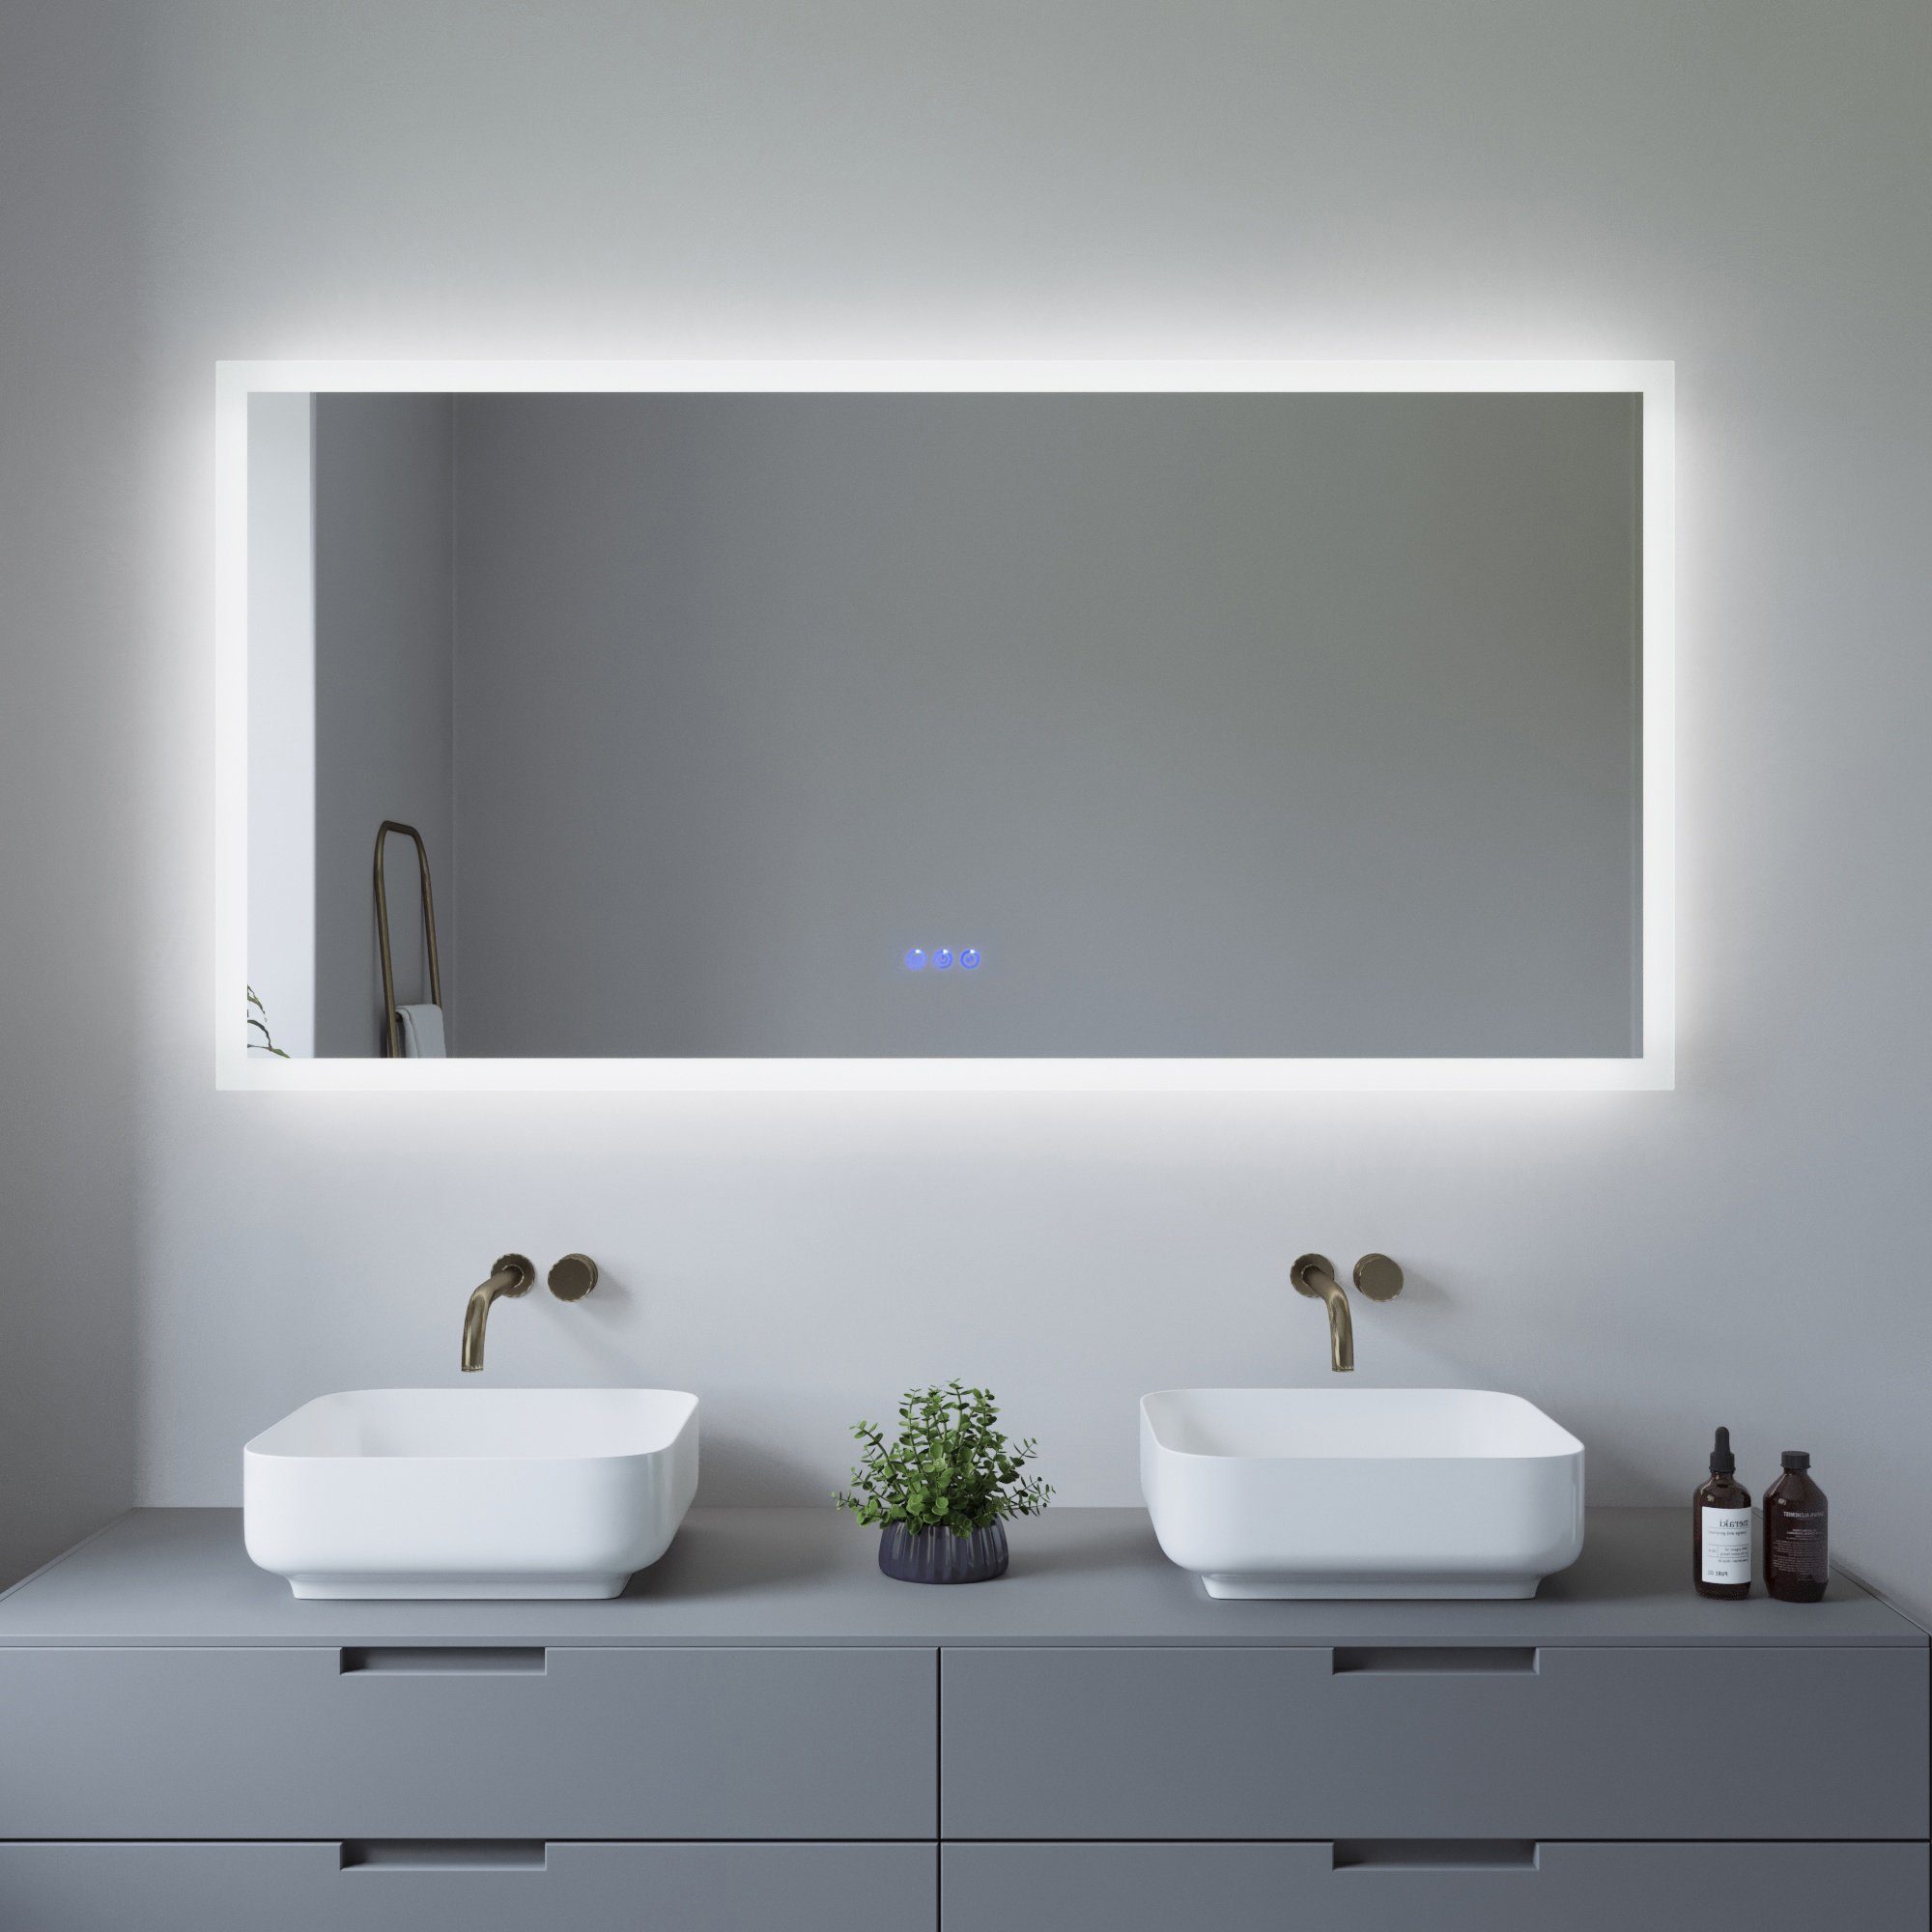 AQUALAVOS Badspiegel LED Badspiegel 140x70 cm Großer Badezimmer Wandspiegel  mit Beleuchtung, 6400K Kaltweiß & Warmweiß 3000K, Energiesparend,  Touchschalter